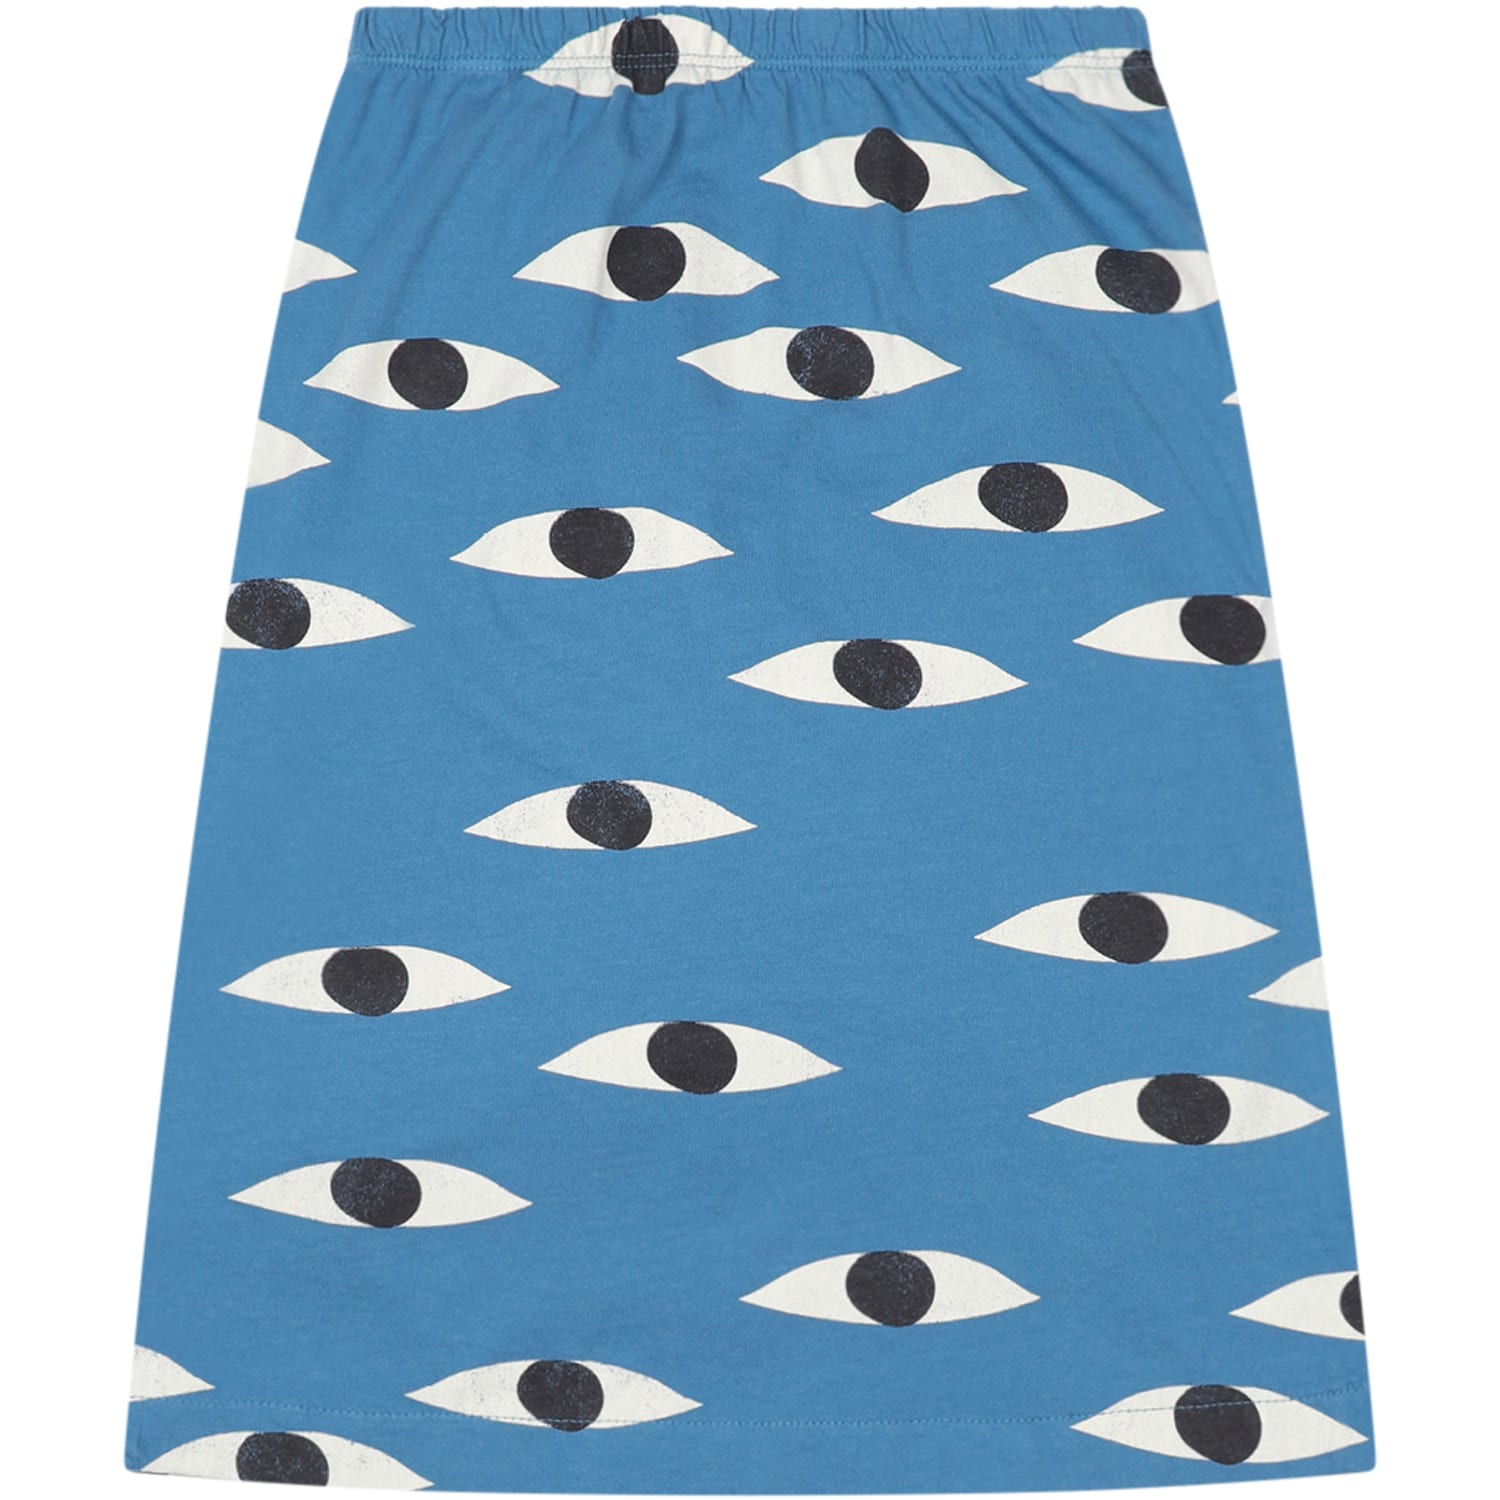 Bobo Choses Azure Skirt For Girl With Eyes